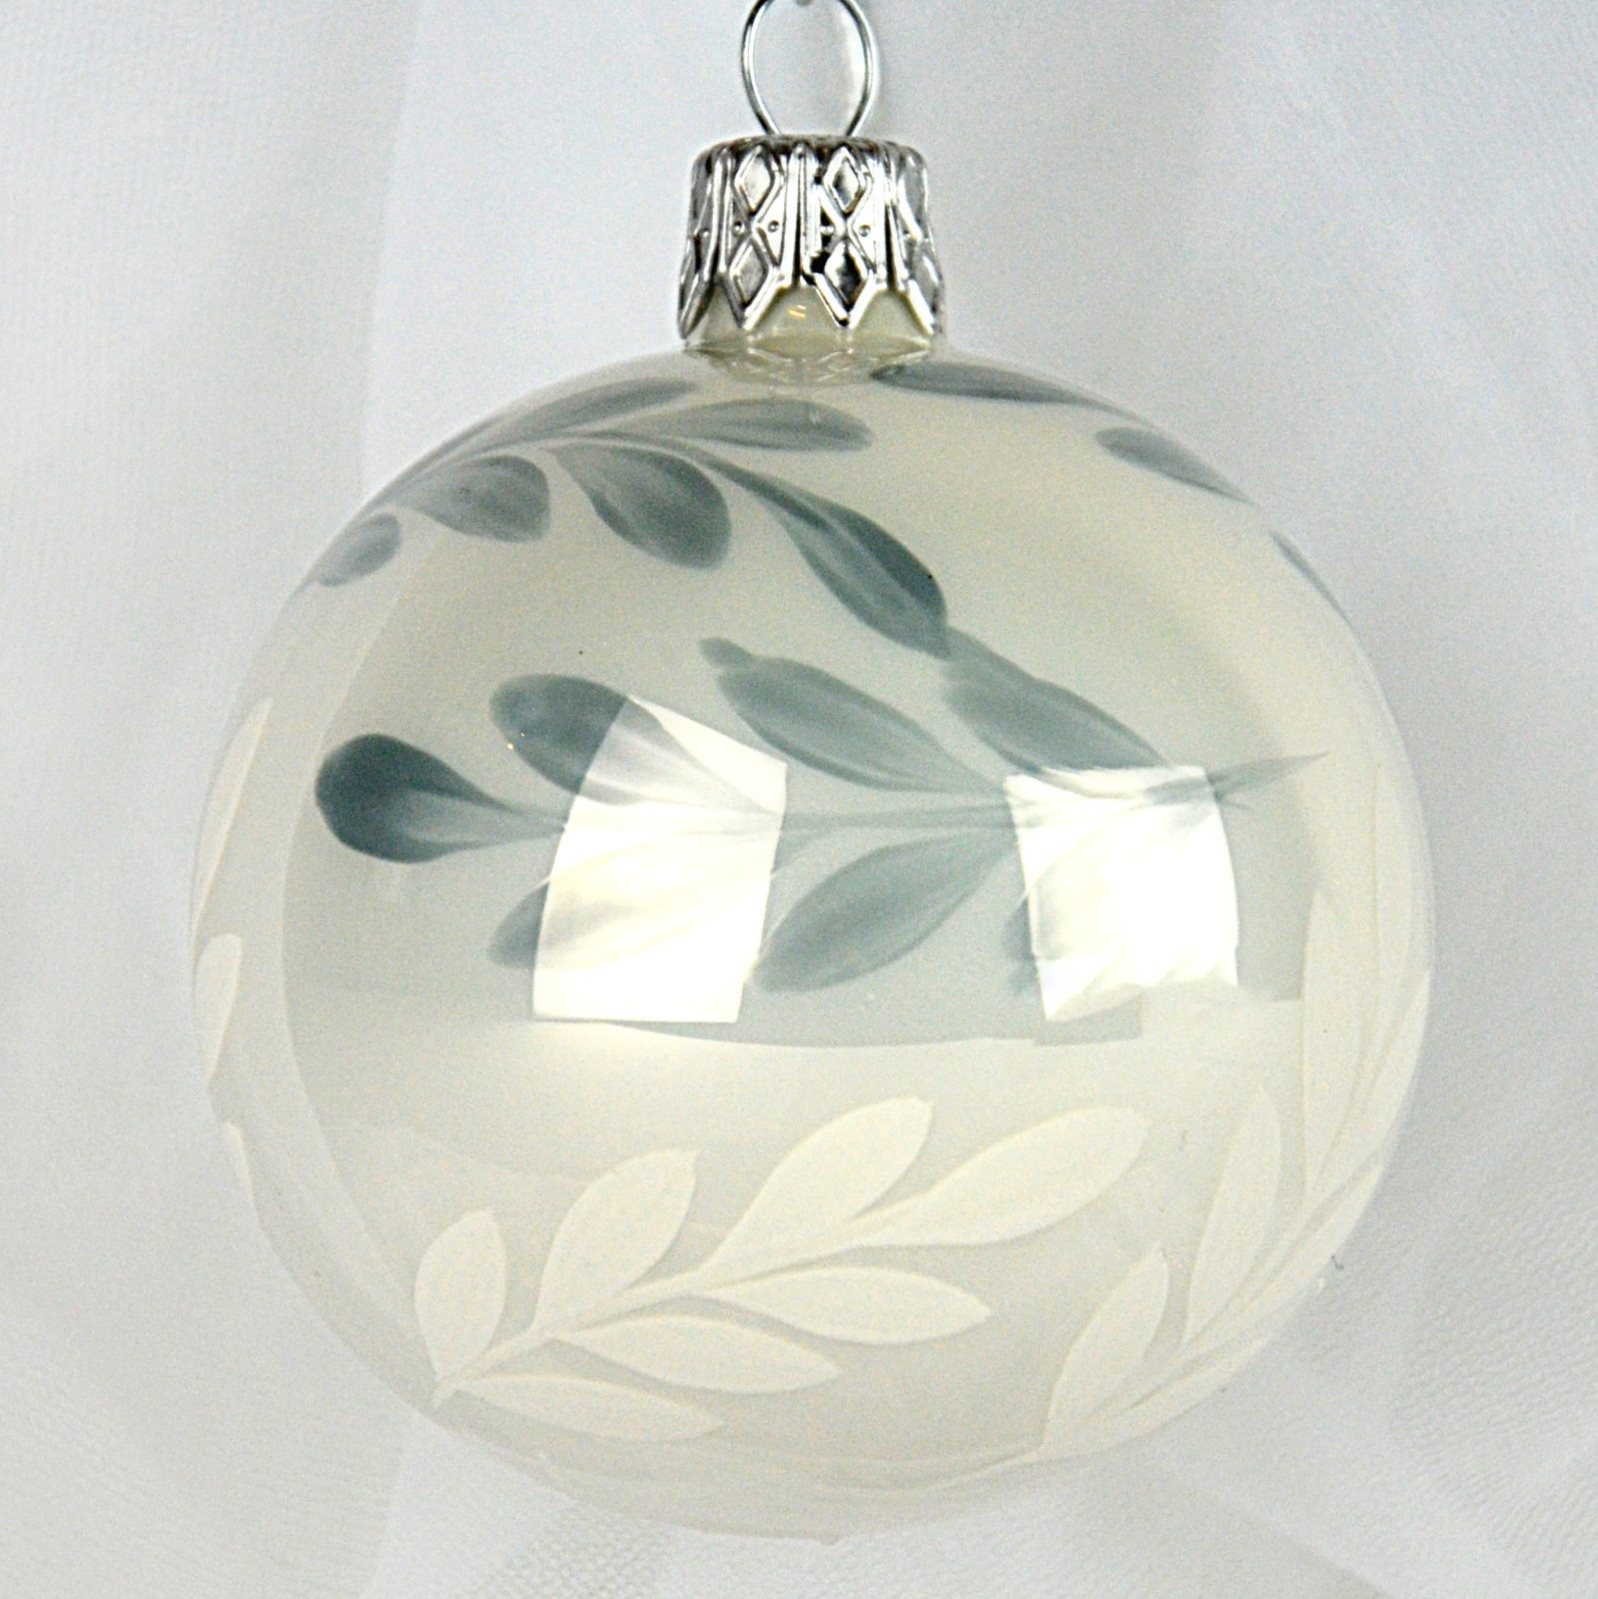 Ozdoba vánoční Bílý porcelán s lístky - koule 8 cm